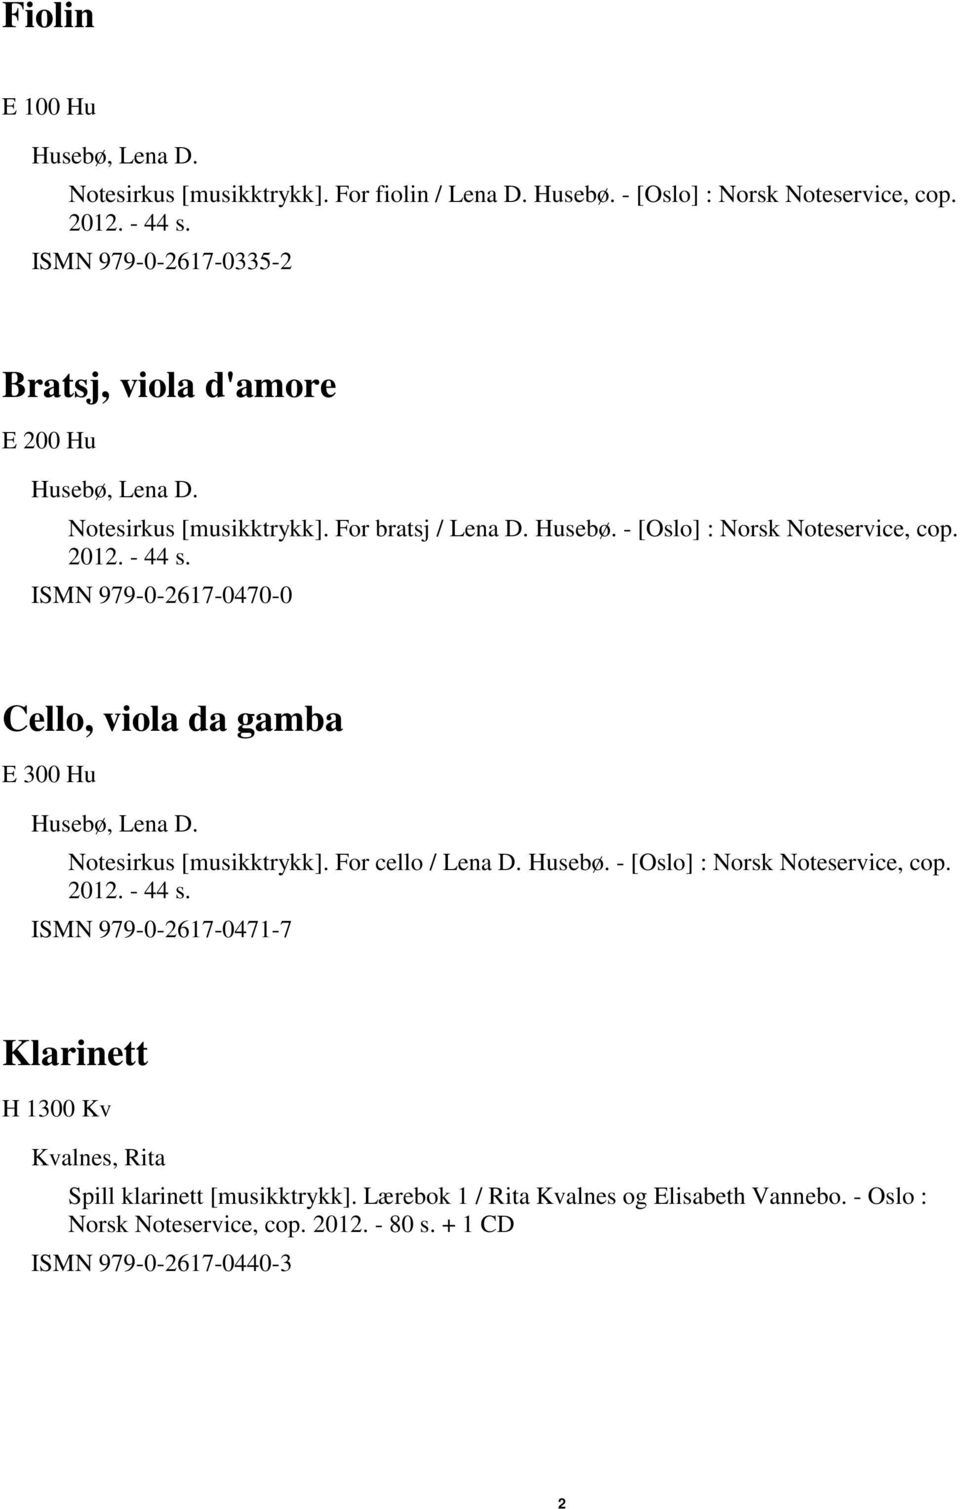 ISMN 979-0-2617-0470-0 Cello, viola da gamba E 300 Hu Husebø, Lena D. Notesirkus [musikktrykk]. For cello / Lena D. Husebø. - [Oslo] : Norsk Noteservice, cop. 2012. - 44 s.